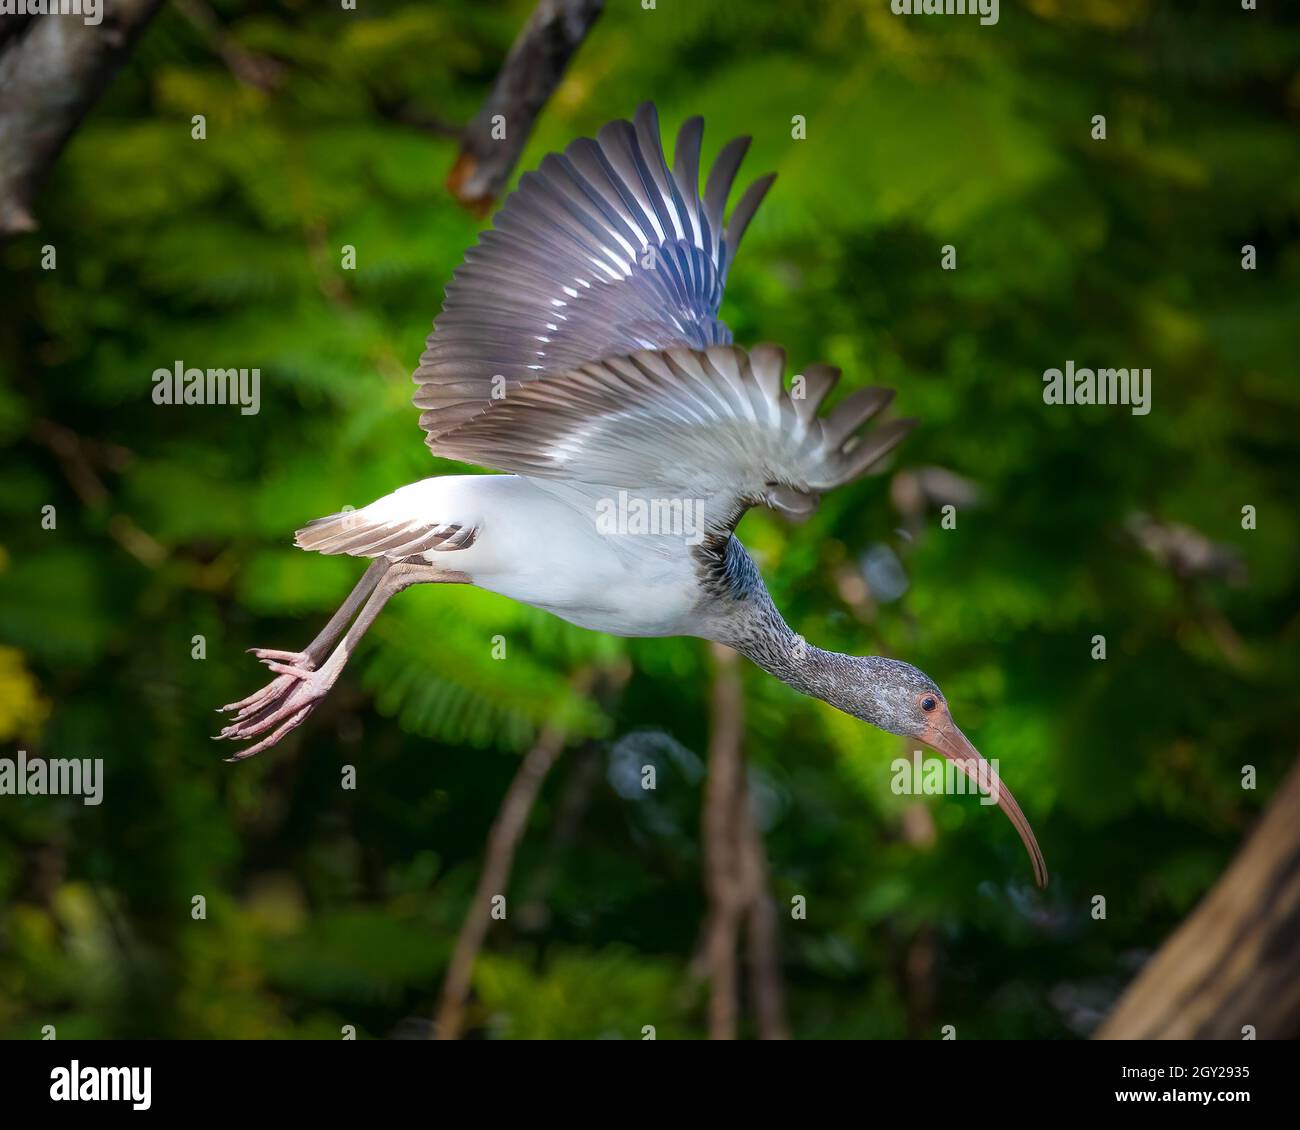 Un jeune Ibis blanc en vol dans les Everglades de Floride.Cet Ibis était assis dans un arbre pendant un certain temps et a finalement pris le décollage pour aller nager. Banque D'Images